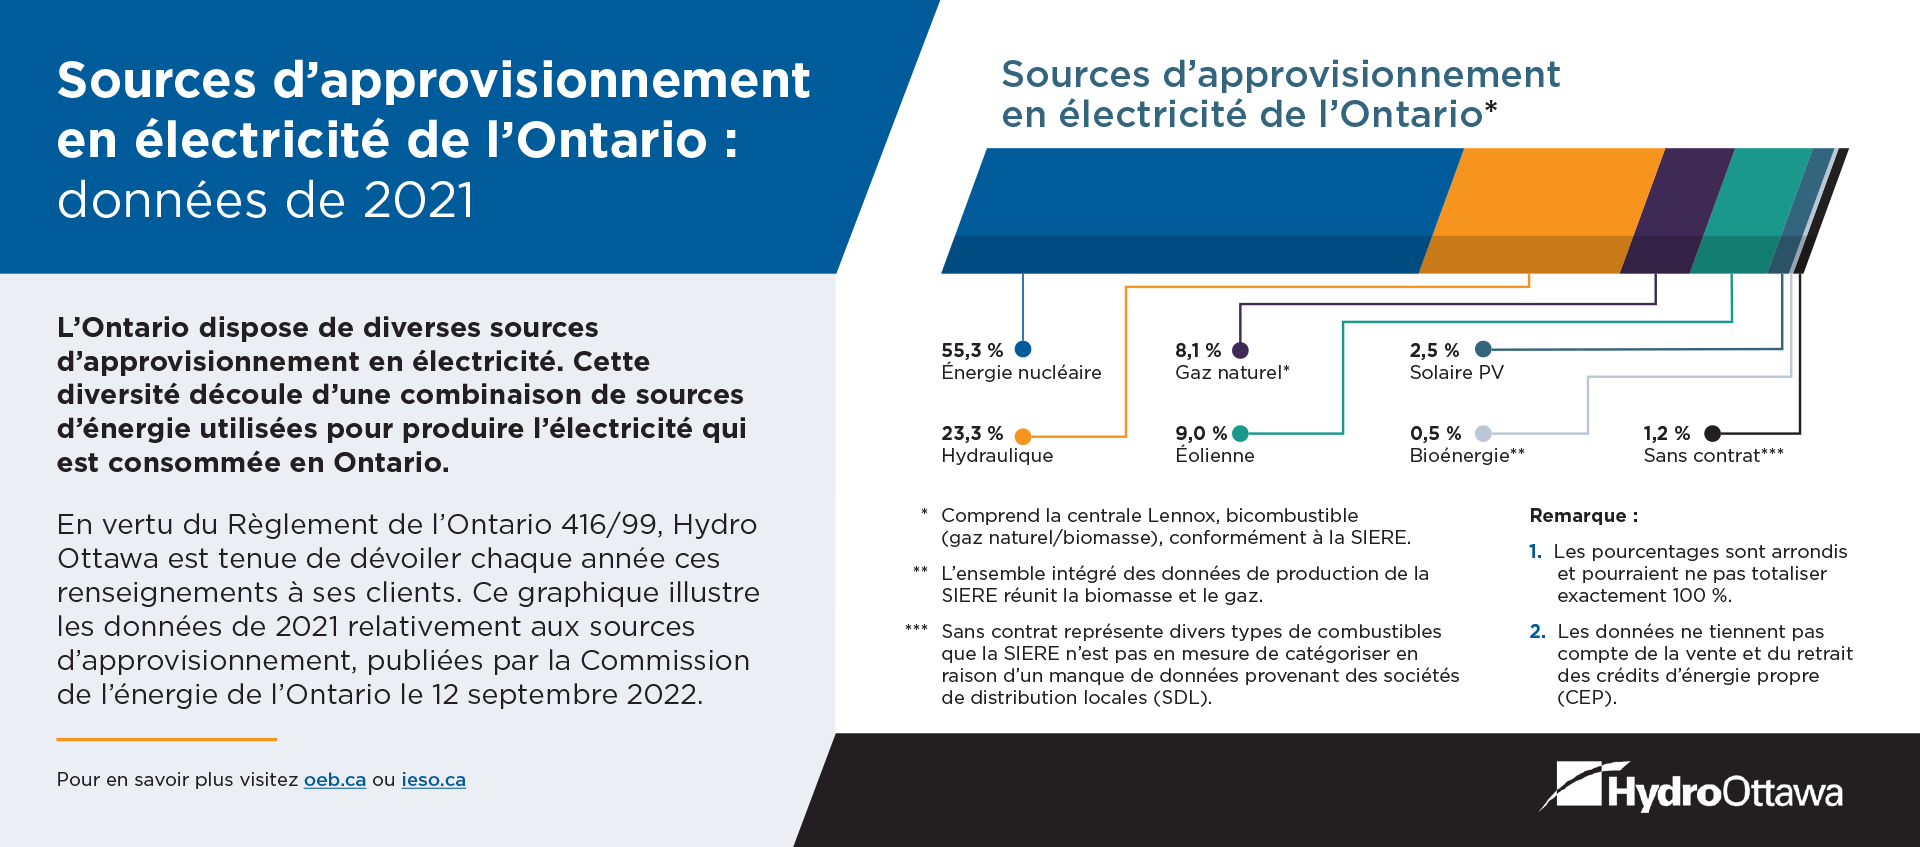 Sources d’approvisionnement en électricité de l’Ontario : données de 2021 - Octobre à novembre 2022